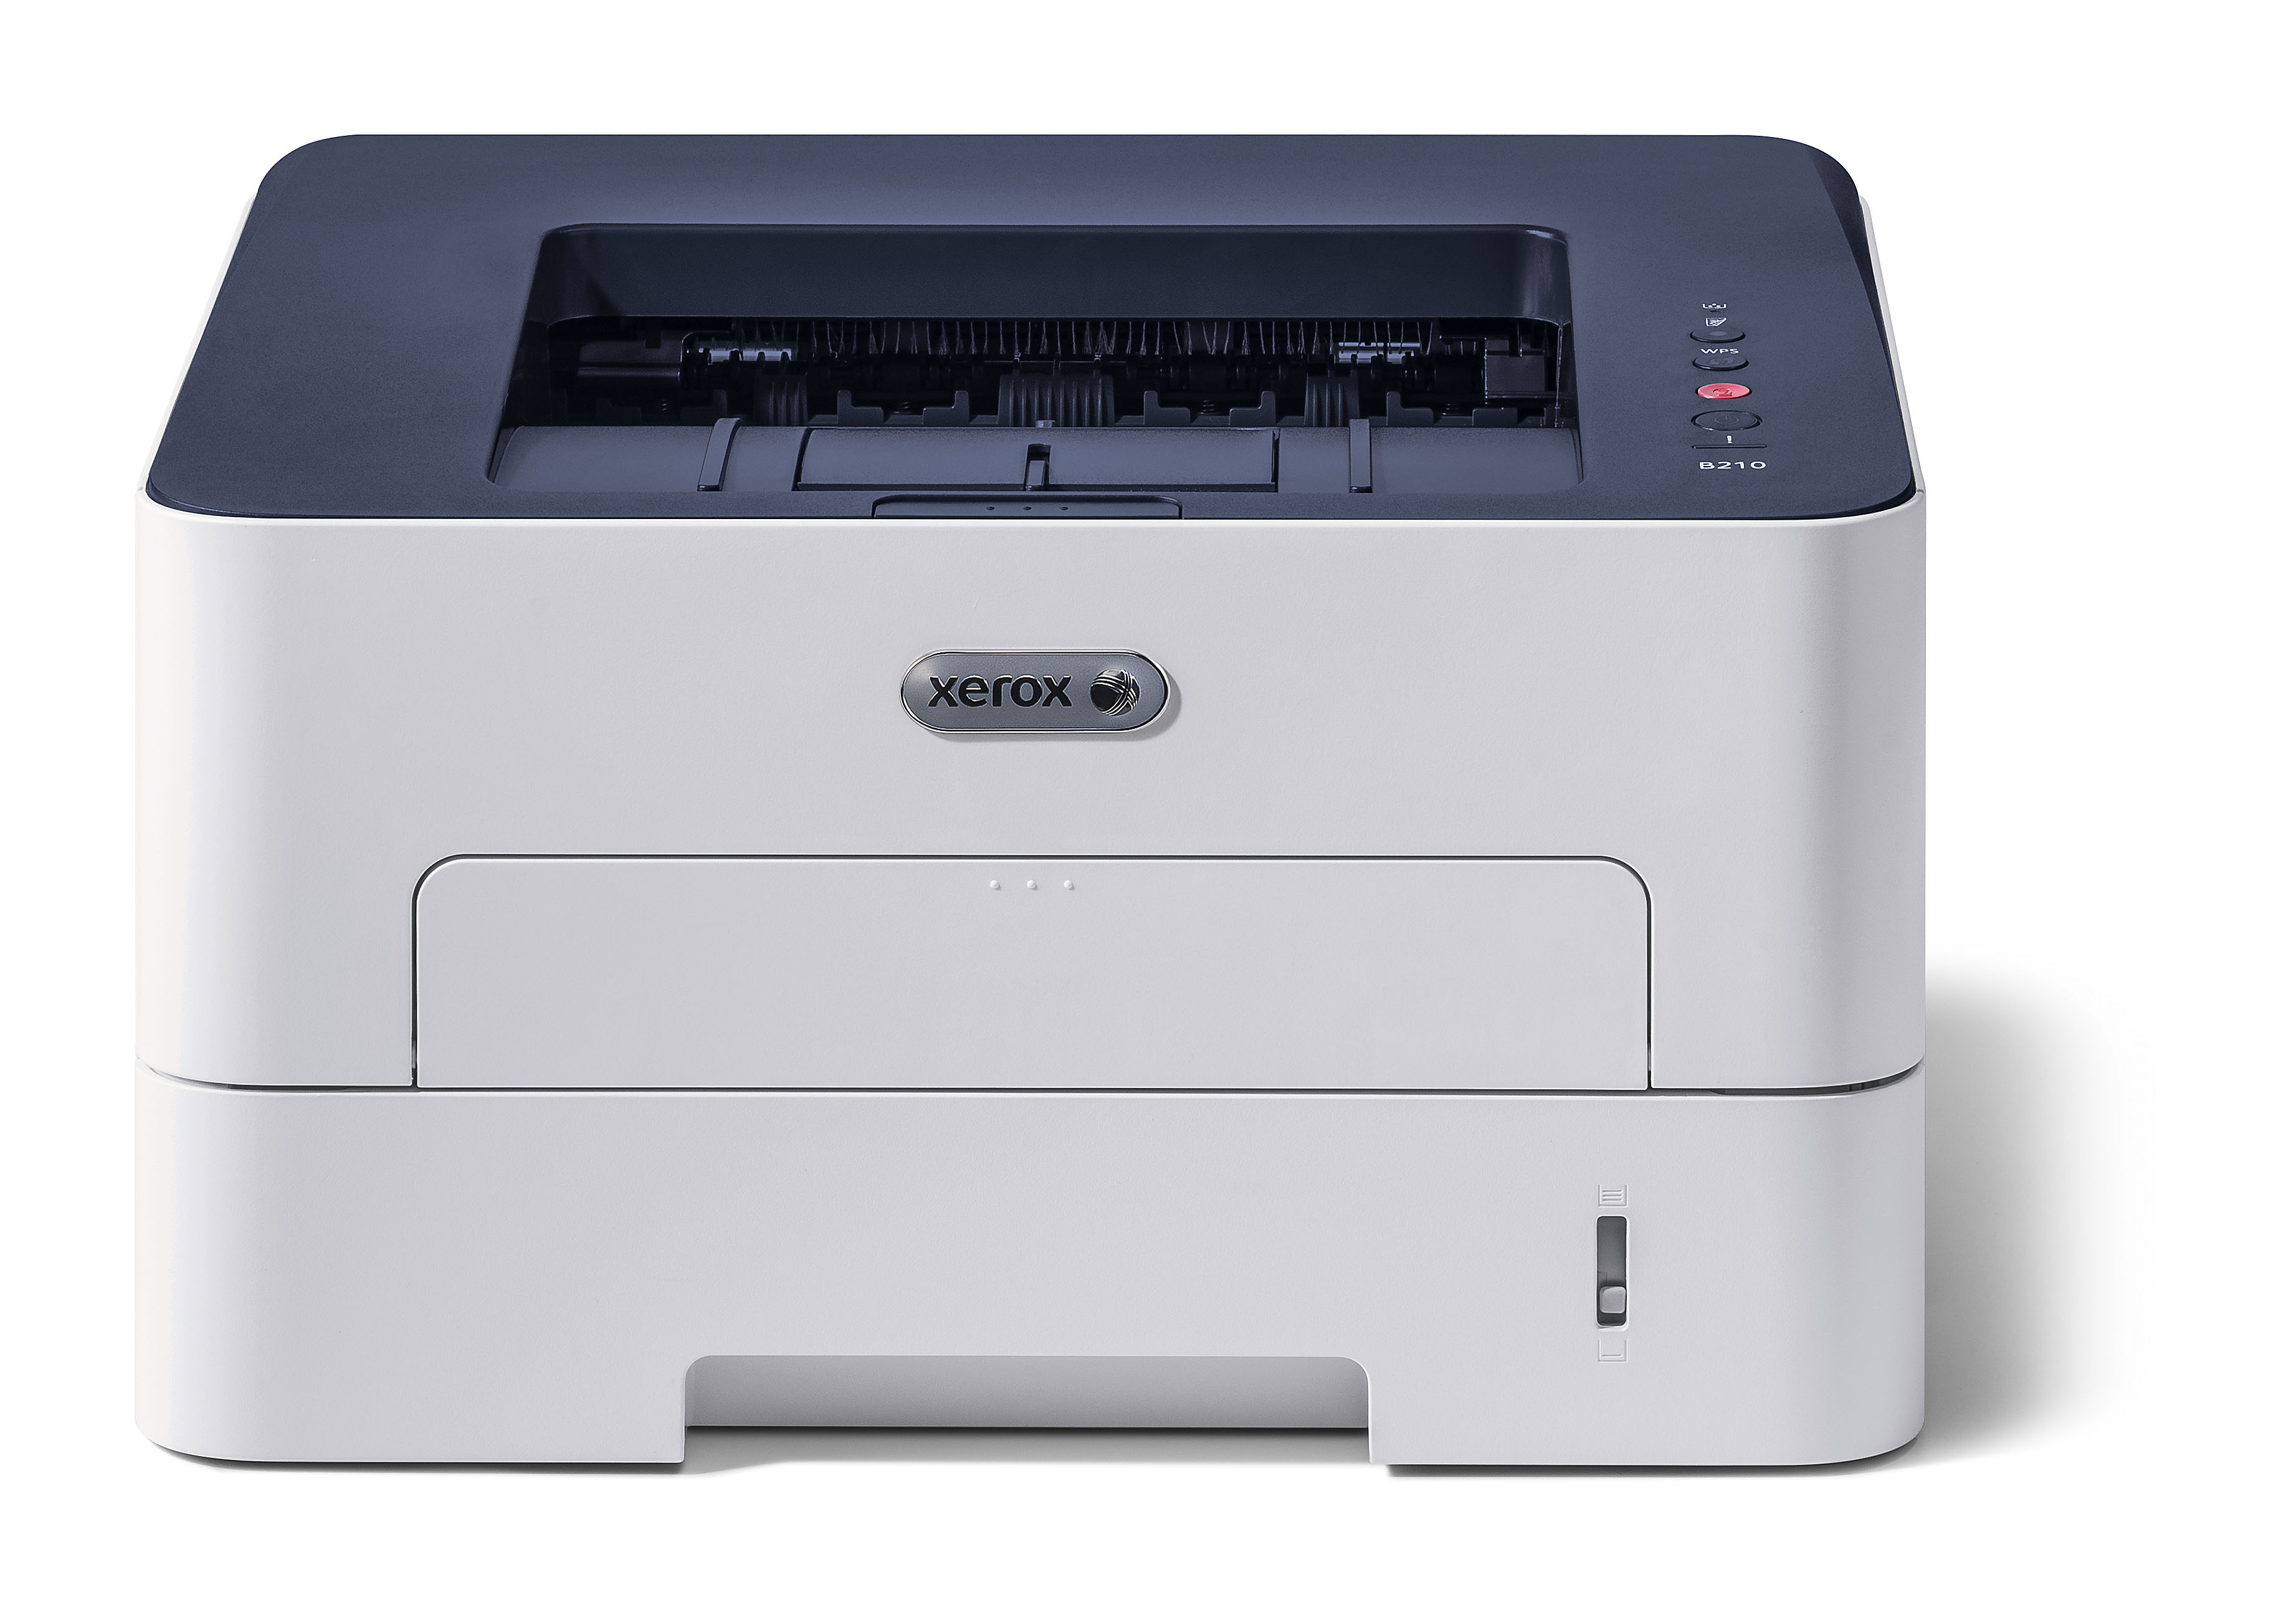 Xerox B210V/DNI laser printer